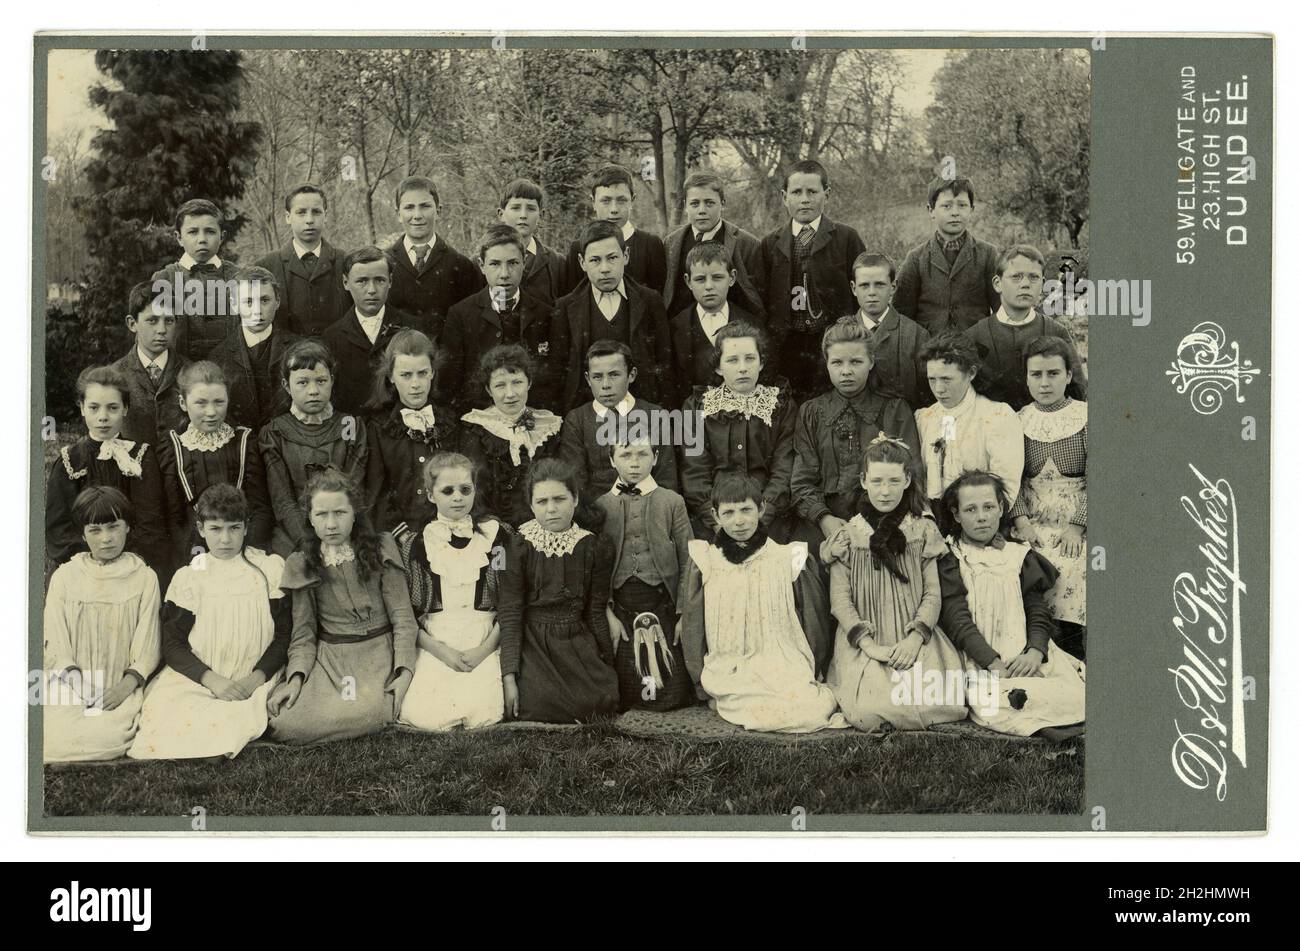 Original, clara tarjeta de gabinete victoriano del grupo de niños victorianos de la escuela, niños y niñas, de clase media bien vestido y uno de los niños lleva un reloj de bolsillo que era caro en ese momento. Posando para un grupo de retrato al aire libre. Muchas modas maravillosas de principios a finales de los años 1890 - vestidos de bata, y estilos de mangas hinchadas de 1893-98, del estudio de D. & W. Prophet, Dundee, Escocia, Reino Unido Foto tomada alrededor de 1898 Foto de stock